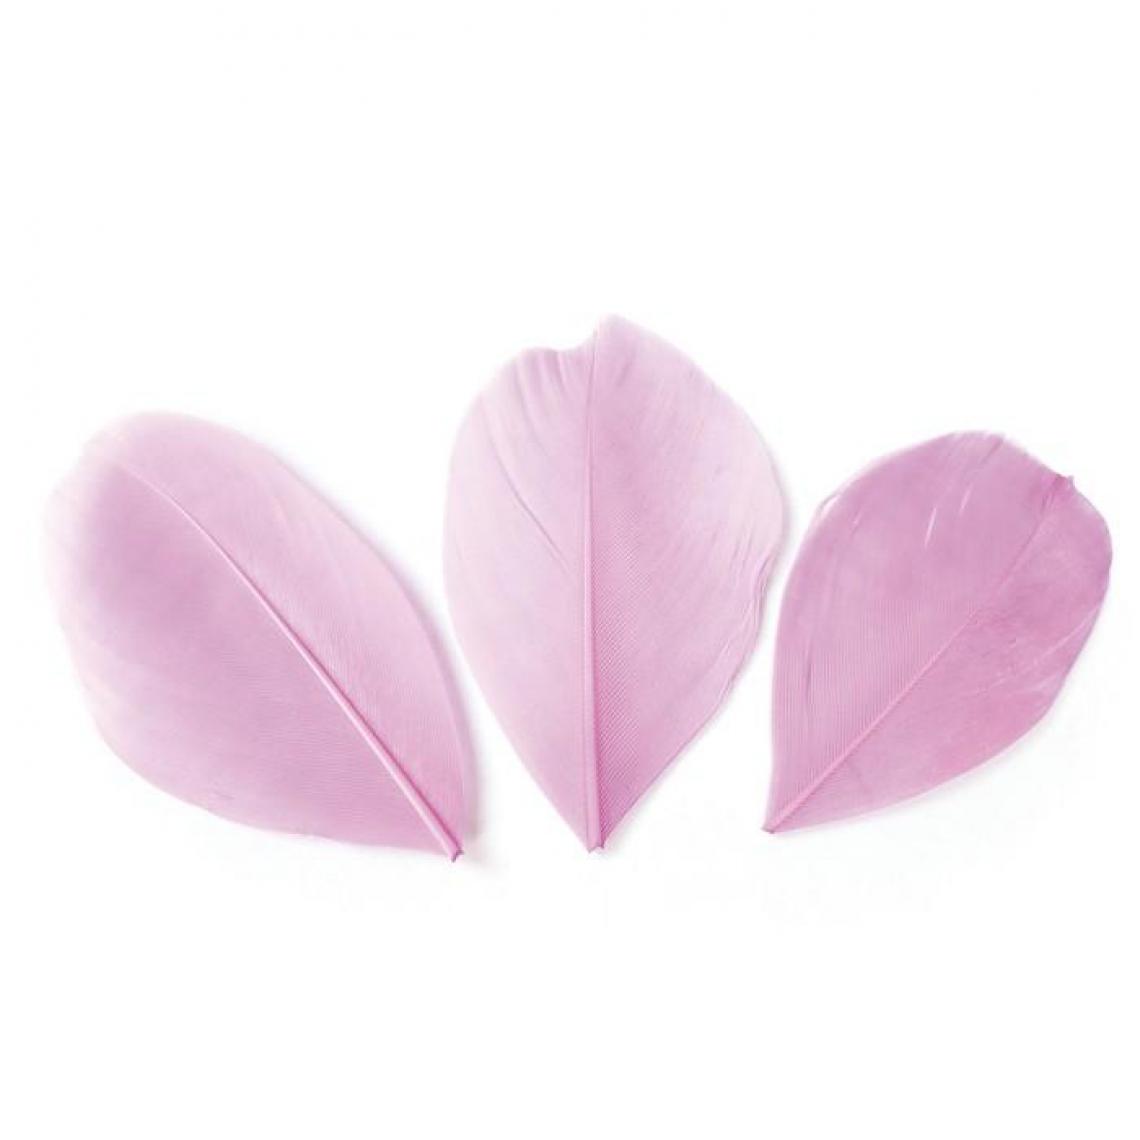 Graines Creatives - 50 plumes coupées - Rose pâle 6 cm - Objets déco